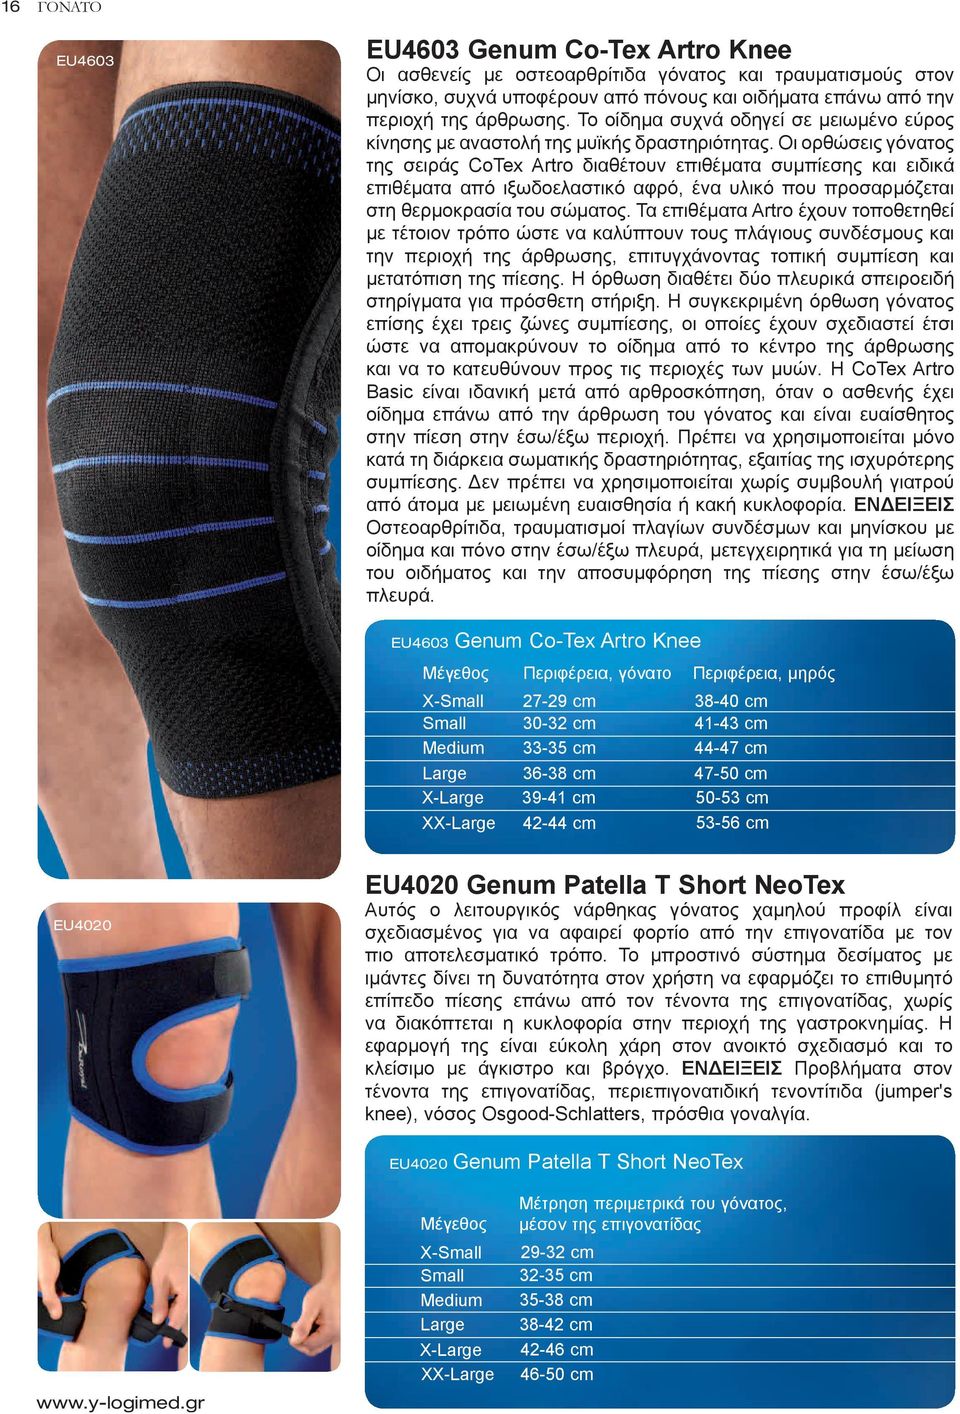 Οι ορθώσεις γόνατος της σειράς CoTex Artro διαθέτουν επιθέματα συμπίεσης και ειδικά επιθέματα από ιξωδοελαστικό αφρό, ένα υλικό που προσαρμόζεται στη θερμοκρασία του σώματος.